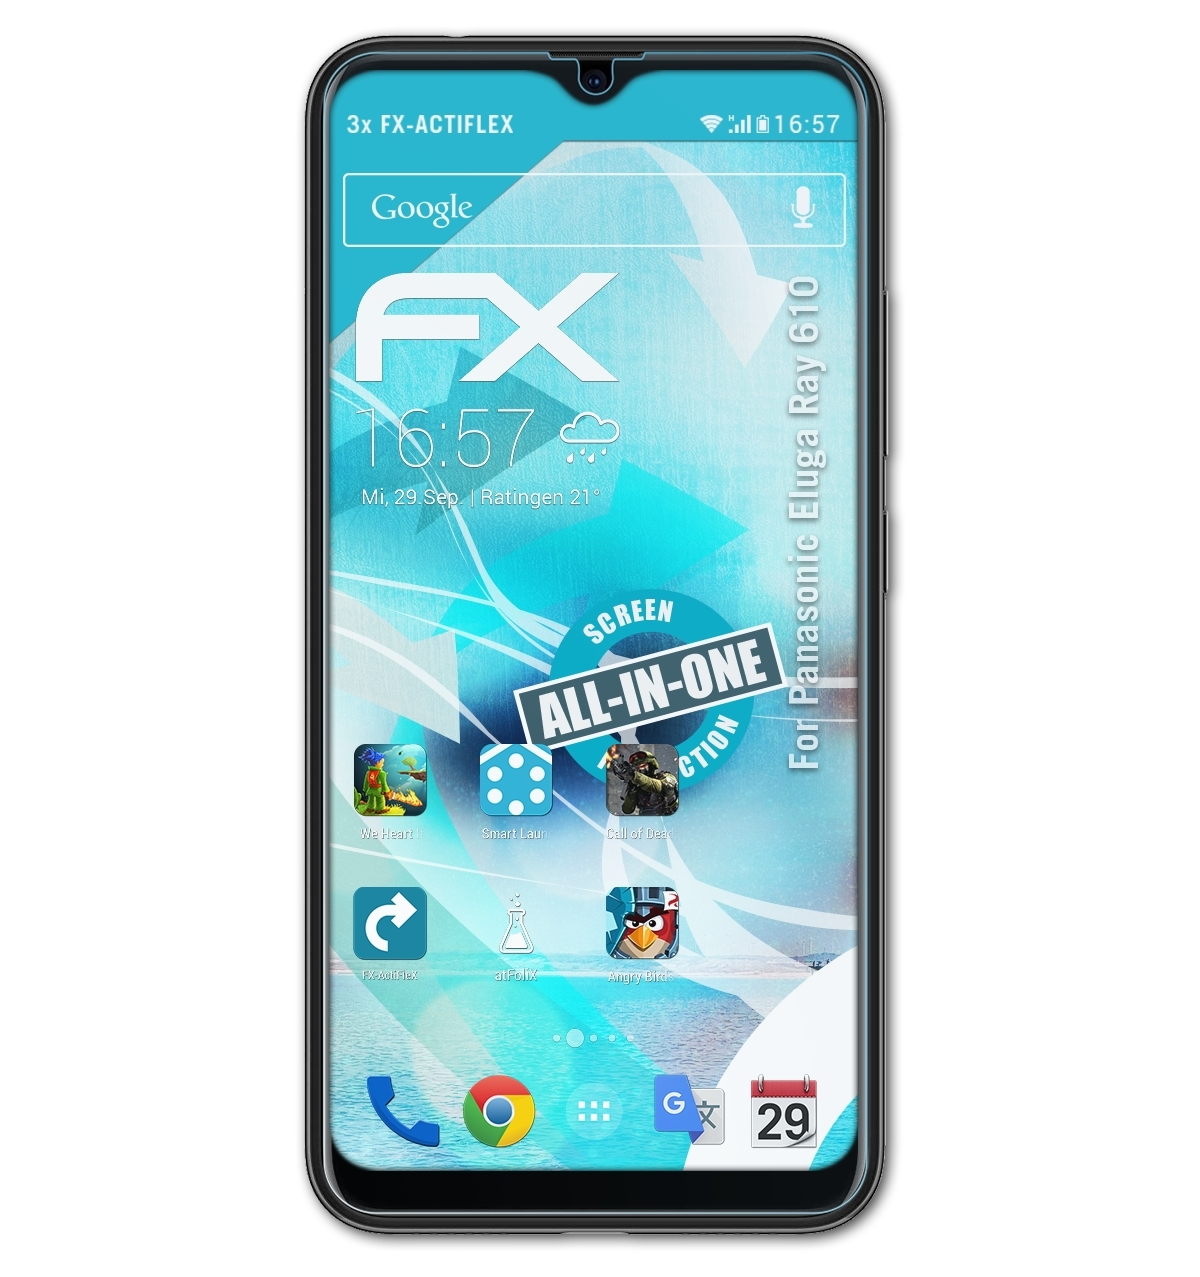 ATFOLIX 3x FX-ActiFleX Displayschutz(für Panasonic Ray Eluga 610)